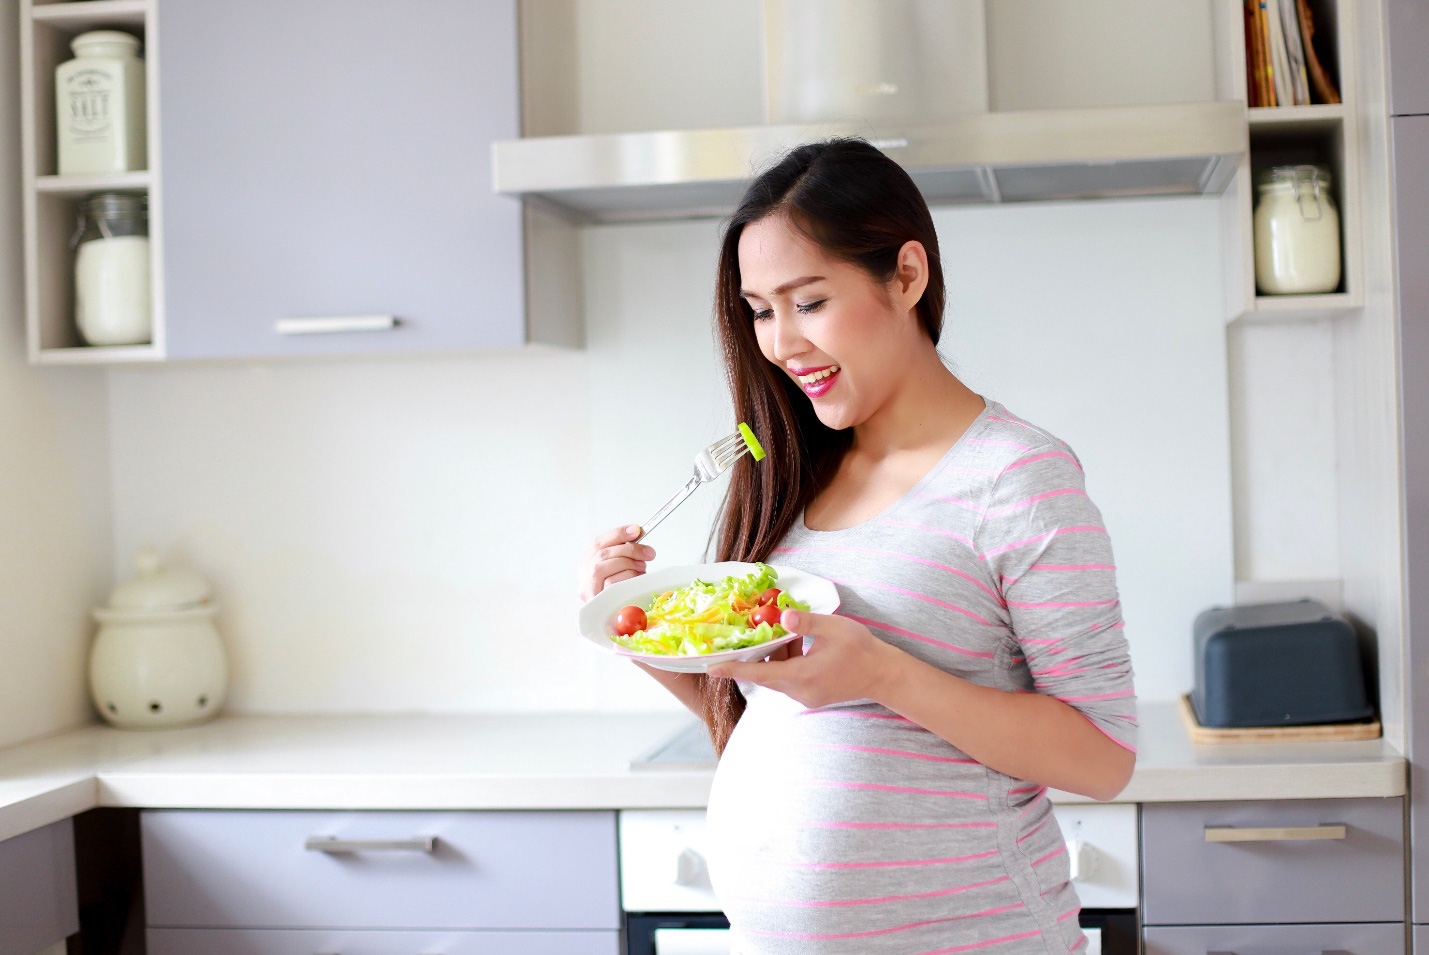 Mang thai và chăm con mùa giãn cách: Bác sĩ chia sẻ cách để an toàn suốt thai kỳ - Ảnh 2.